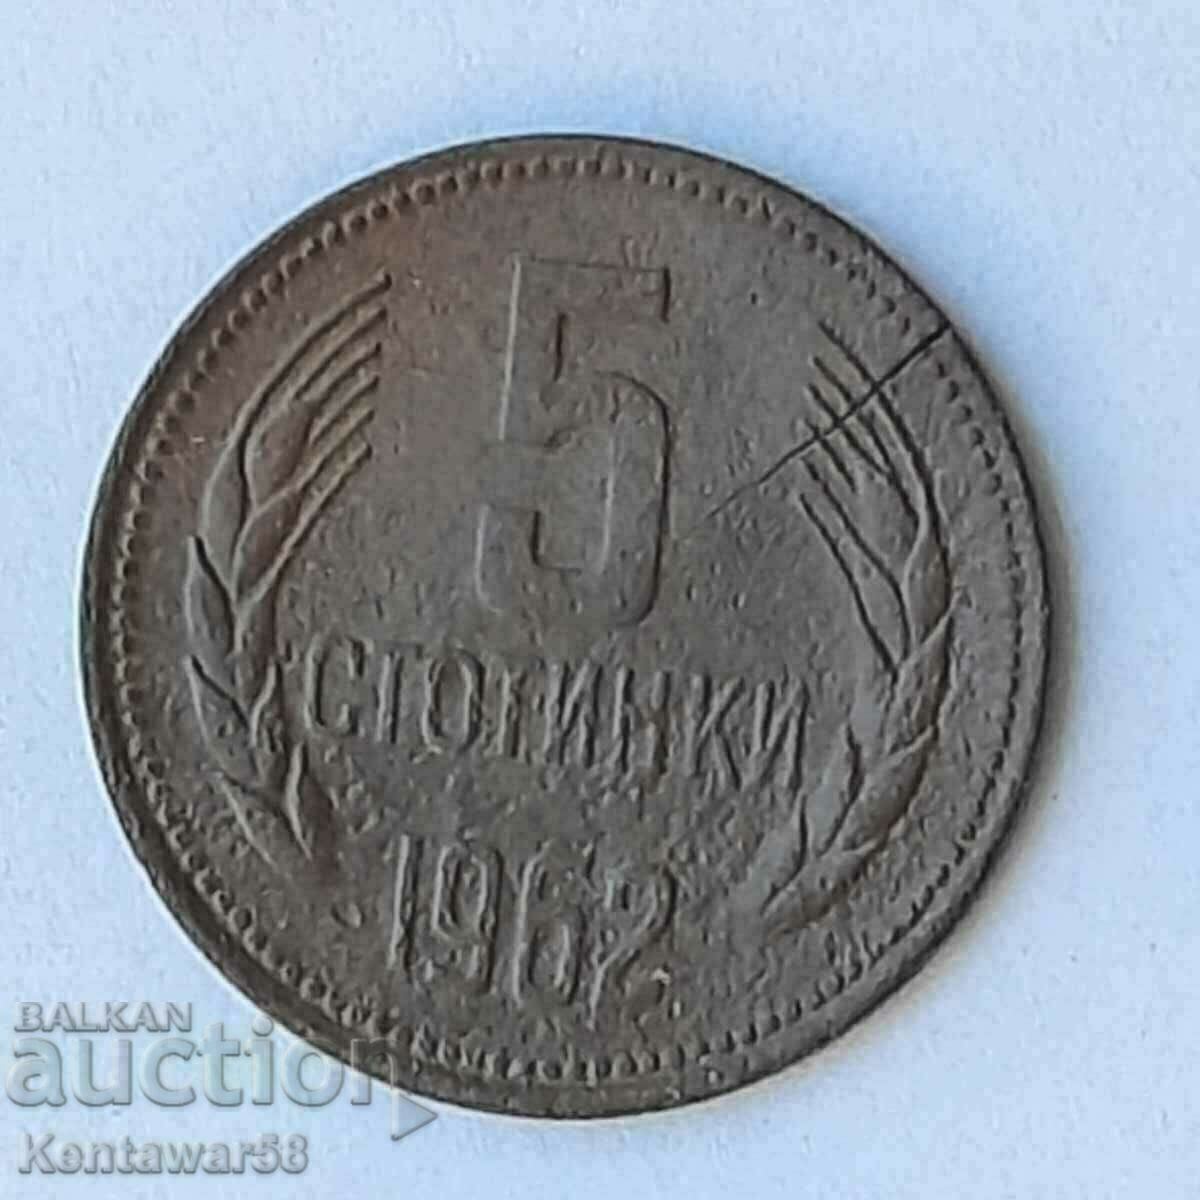 Βουλγαρία - 5 σεντς 1962 με ελάττωμα.